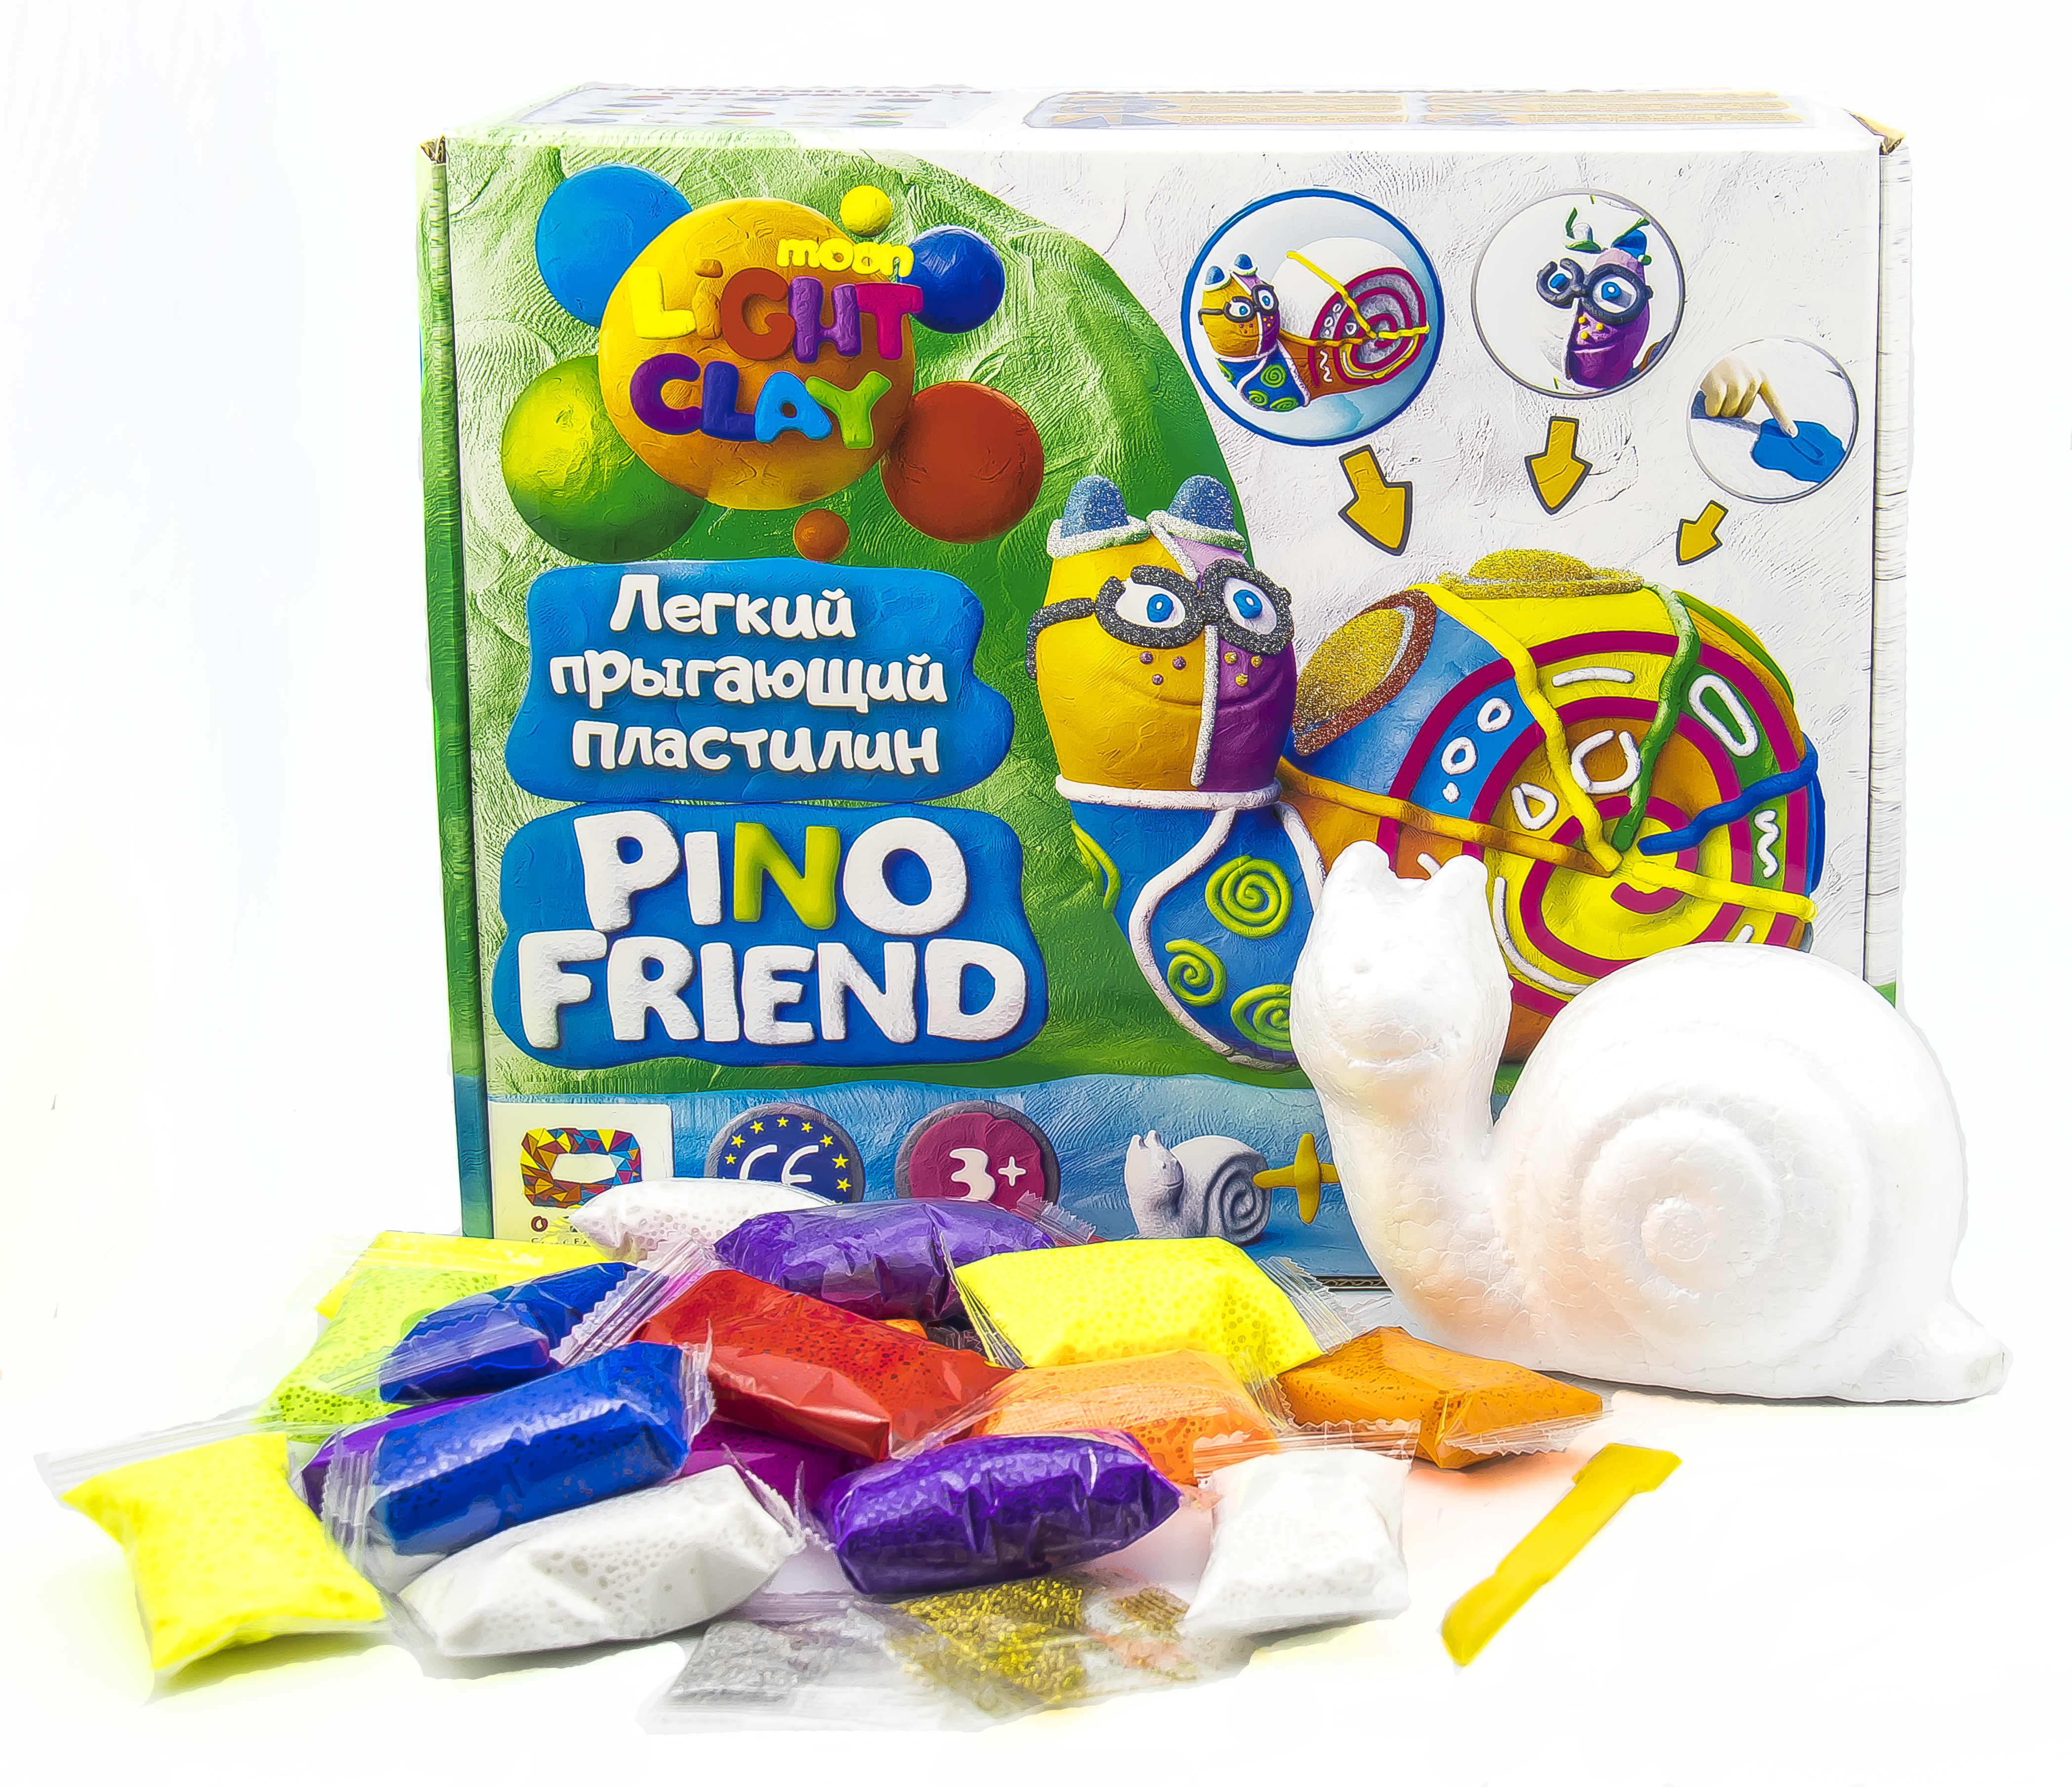  Knete Modellierung Knetmasse Kinder Spielzeug Geschenk Idee Pino Friend Railly